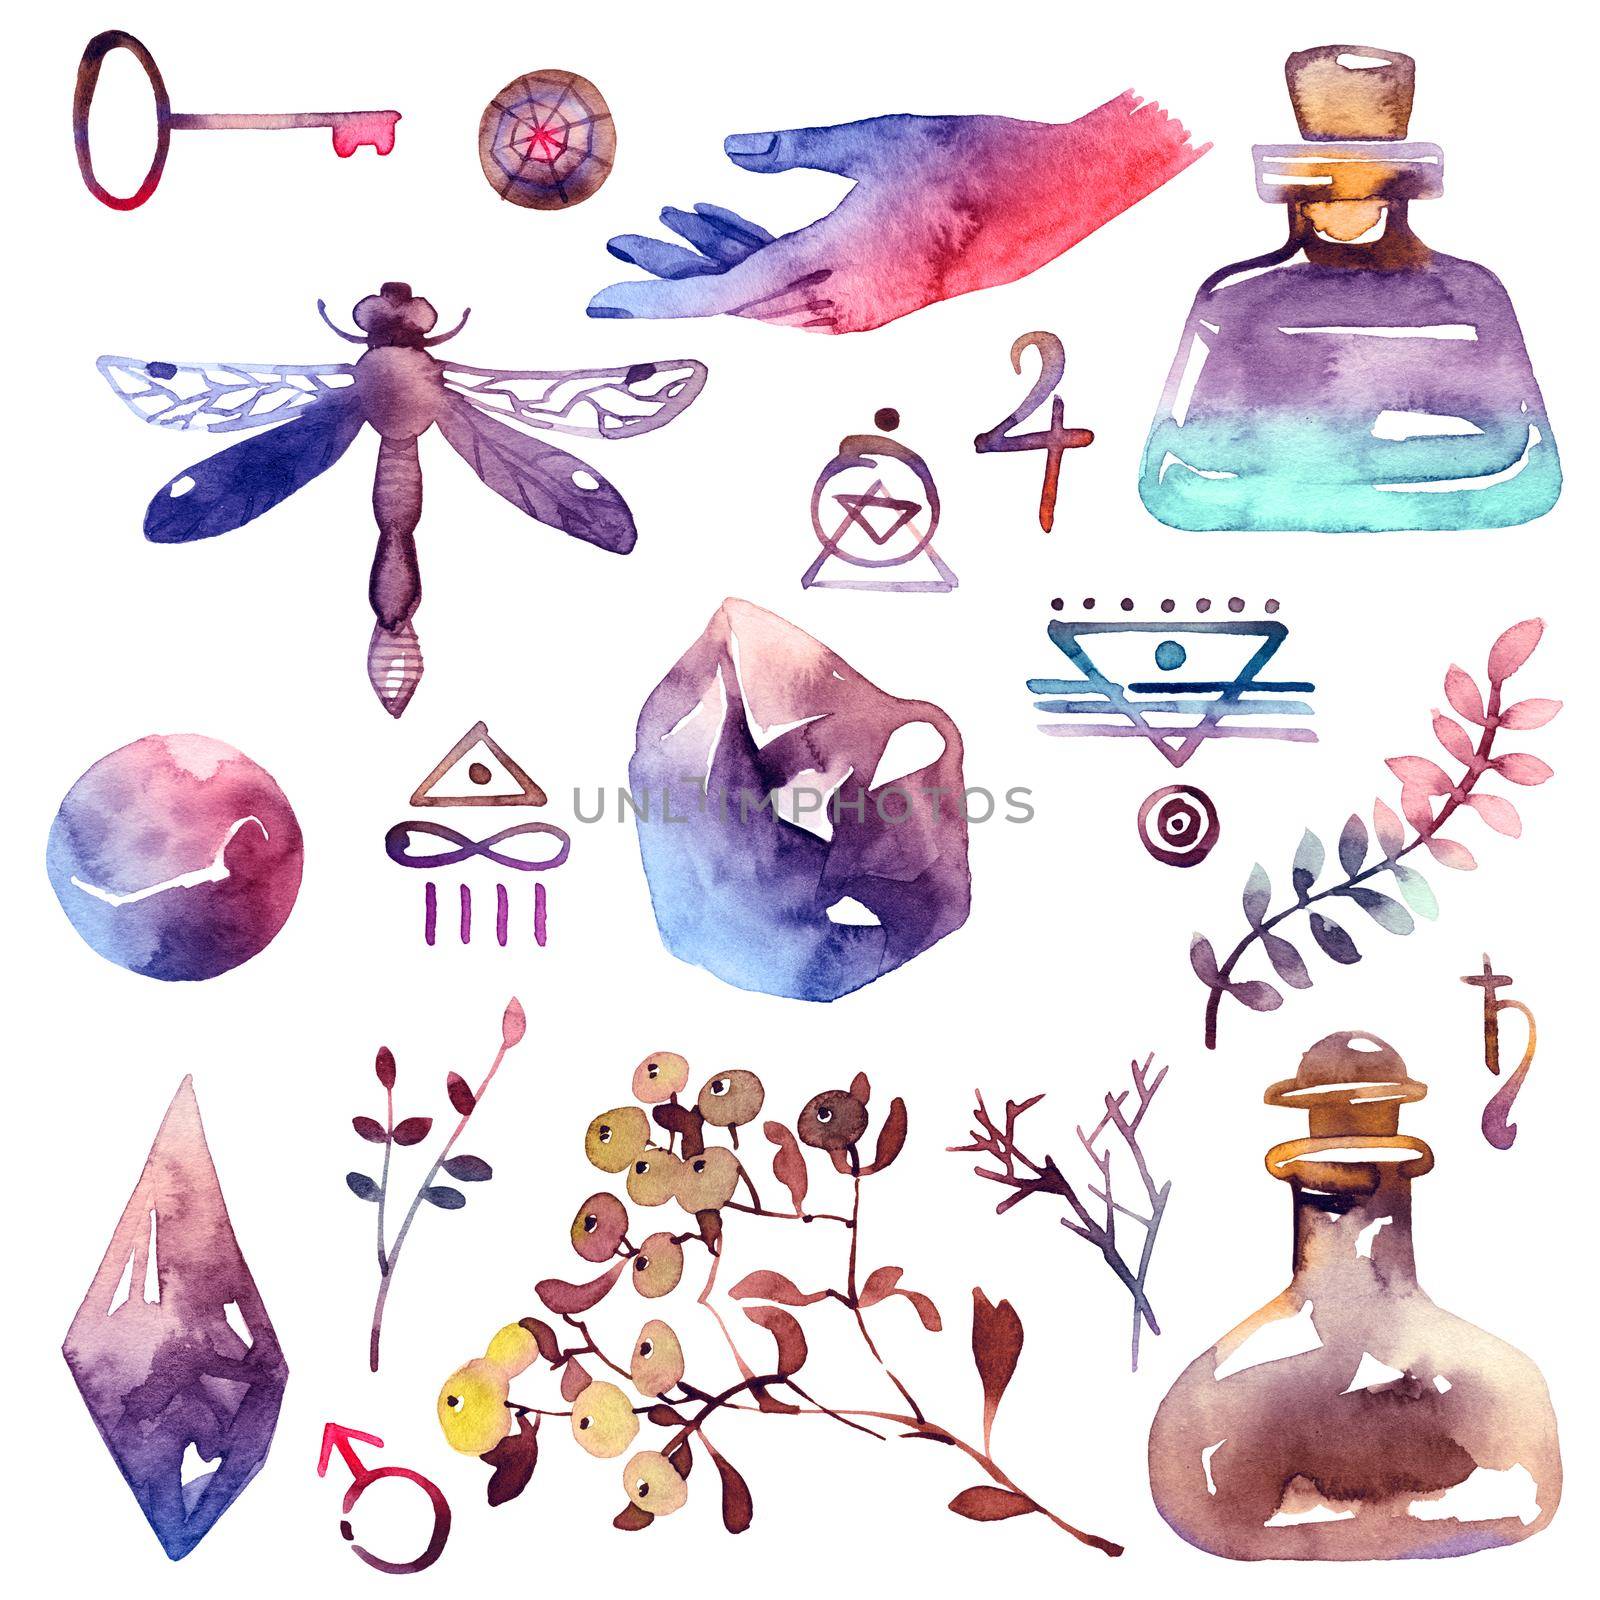 Watercolor alchemy set by Olatarakanova